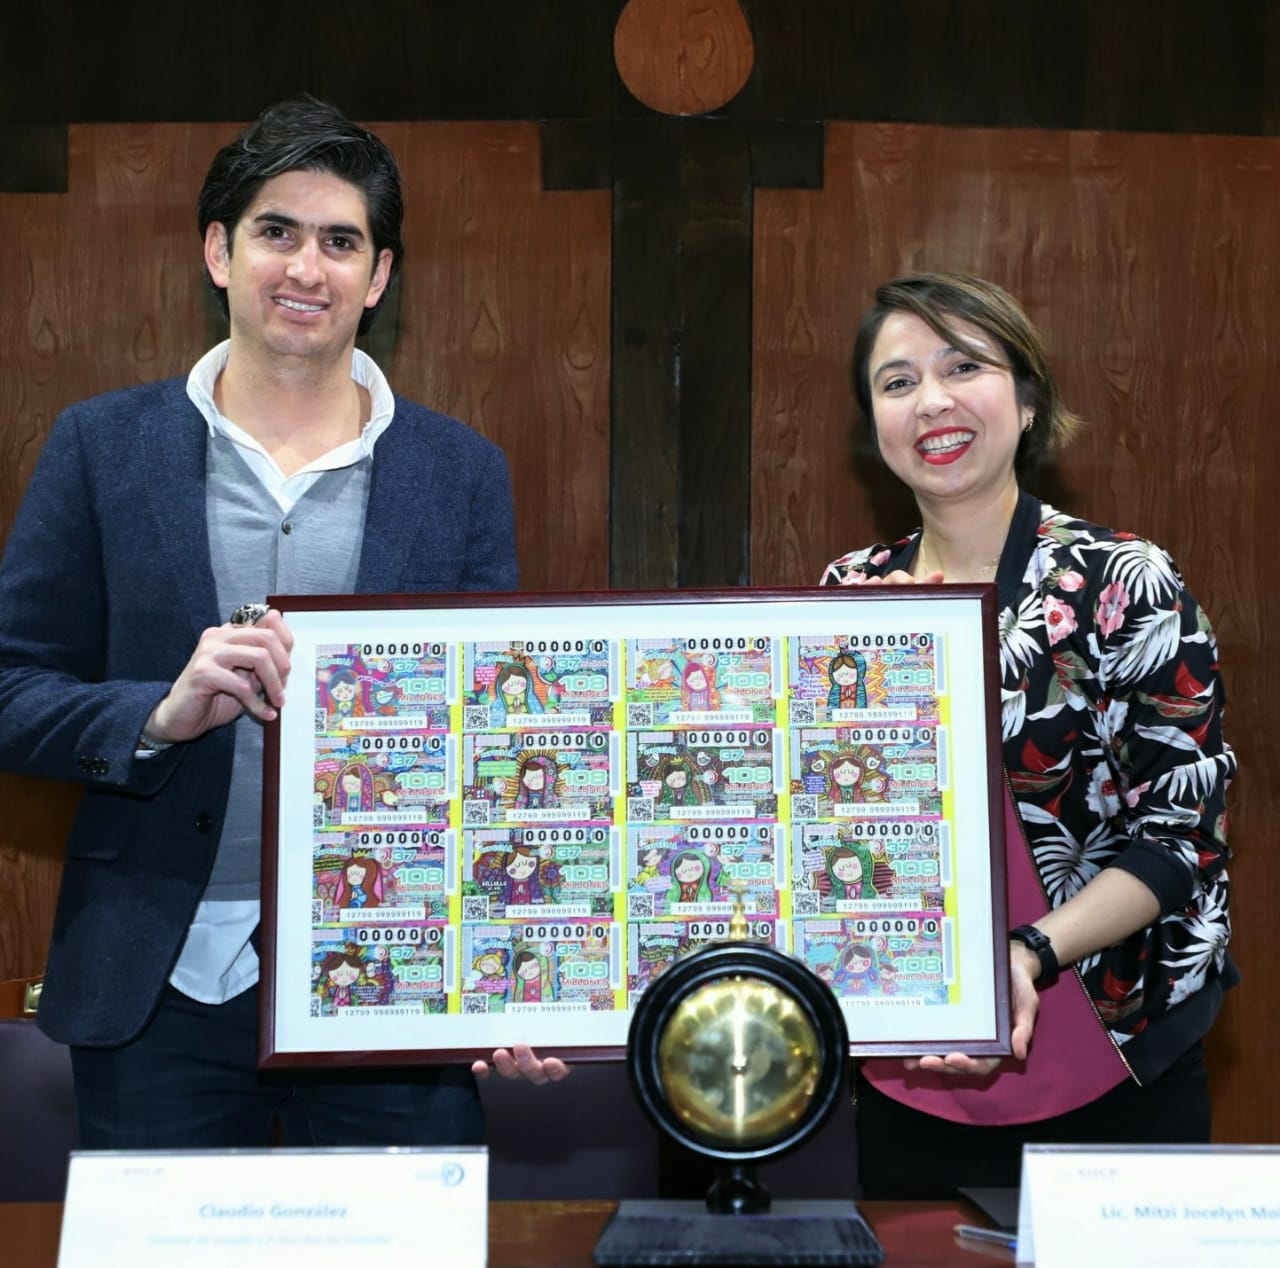  Fotografía donde posan con el billete del Sorteo Especial, de izquierda a derecha: Claudio Gonzalez  y Mitzi Jocelyn Molina Ramírez